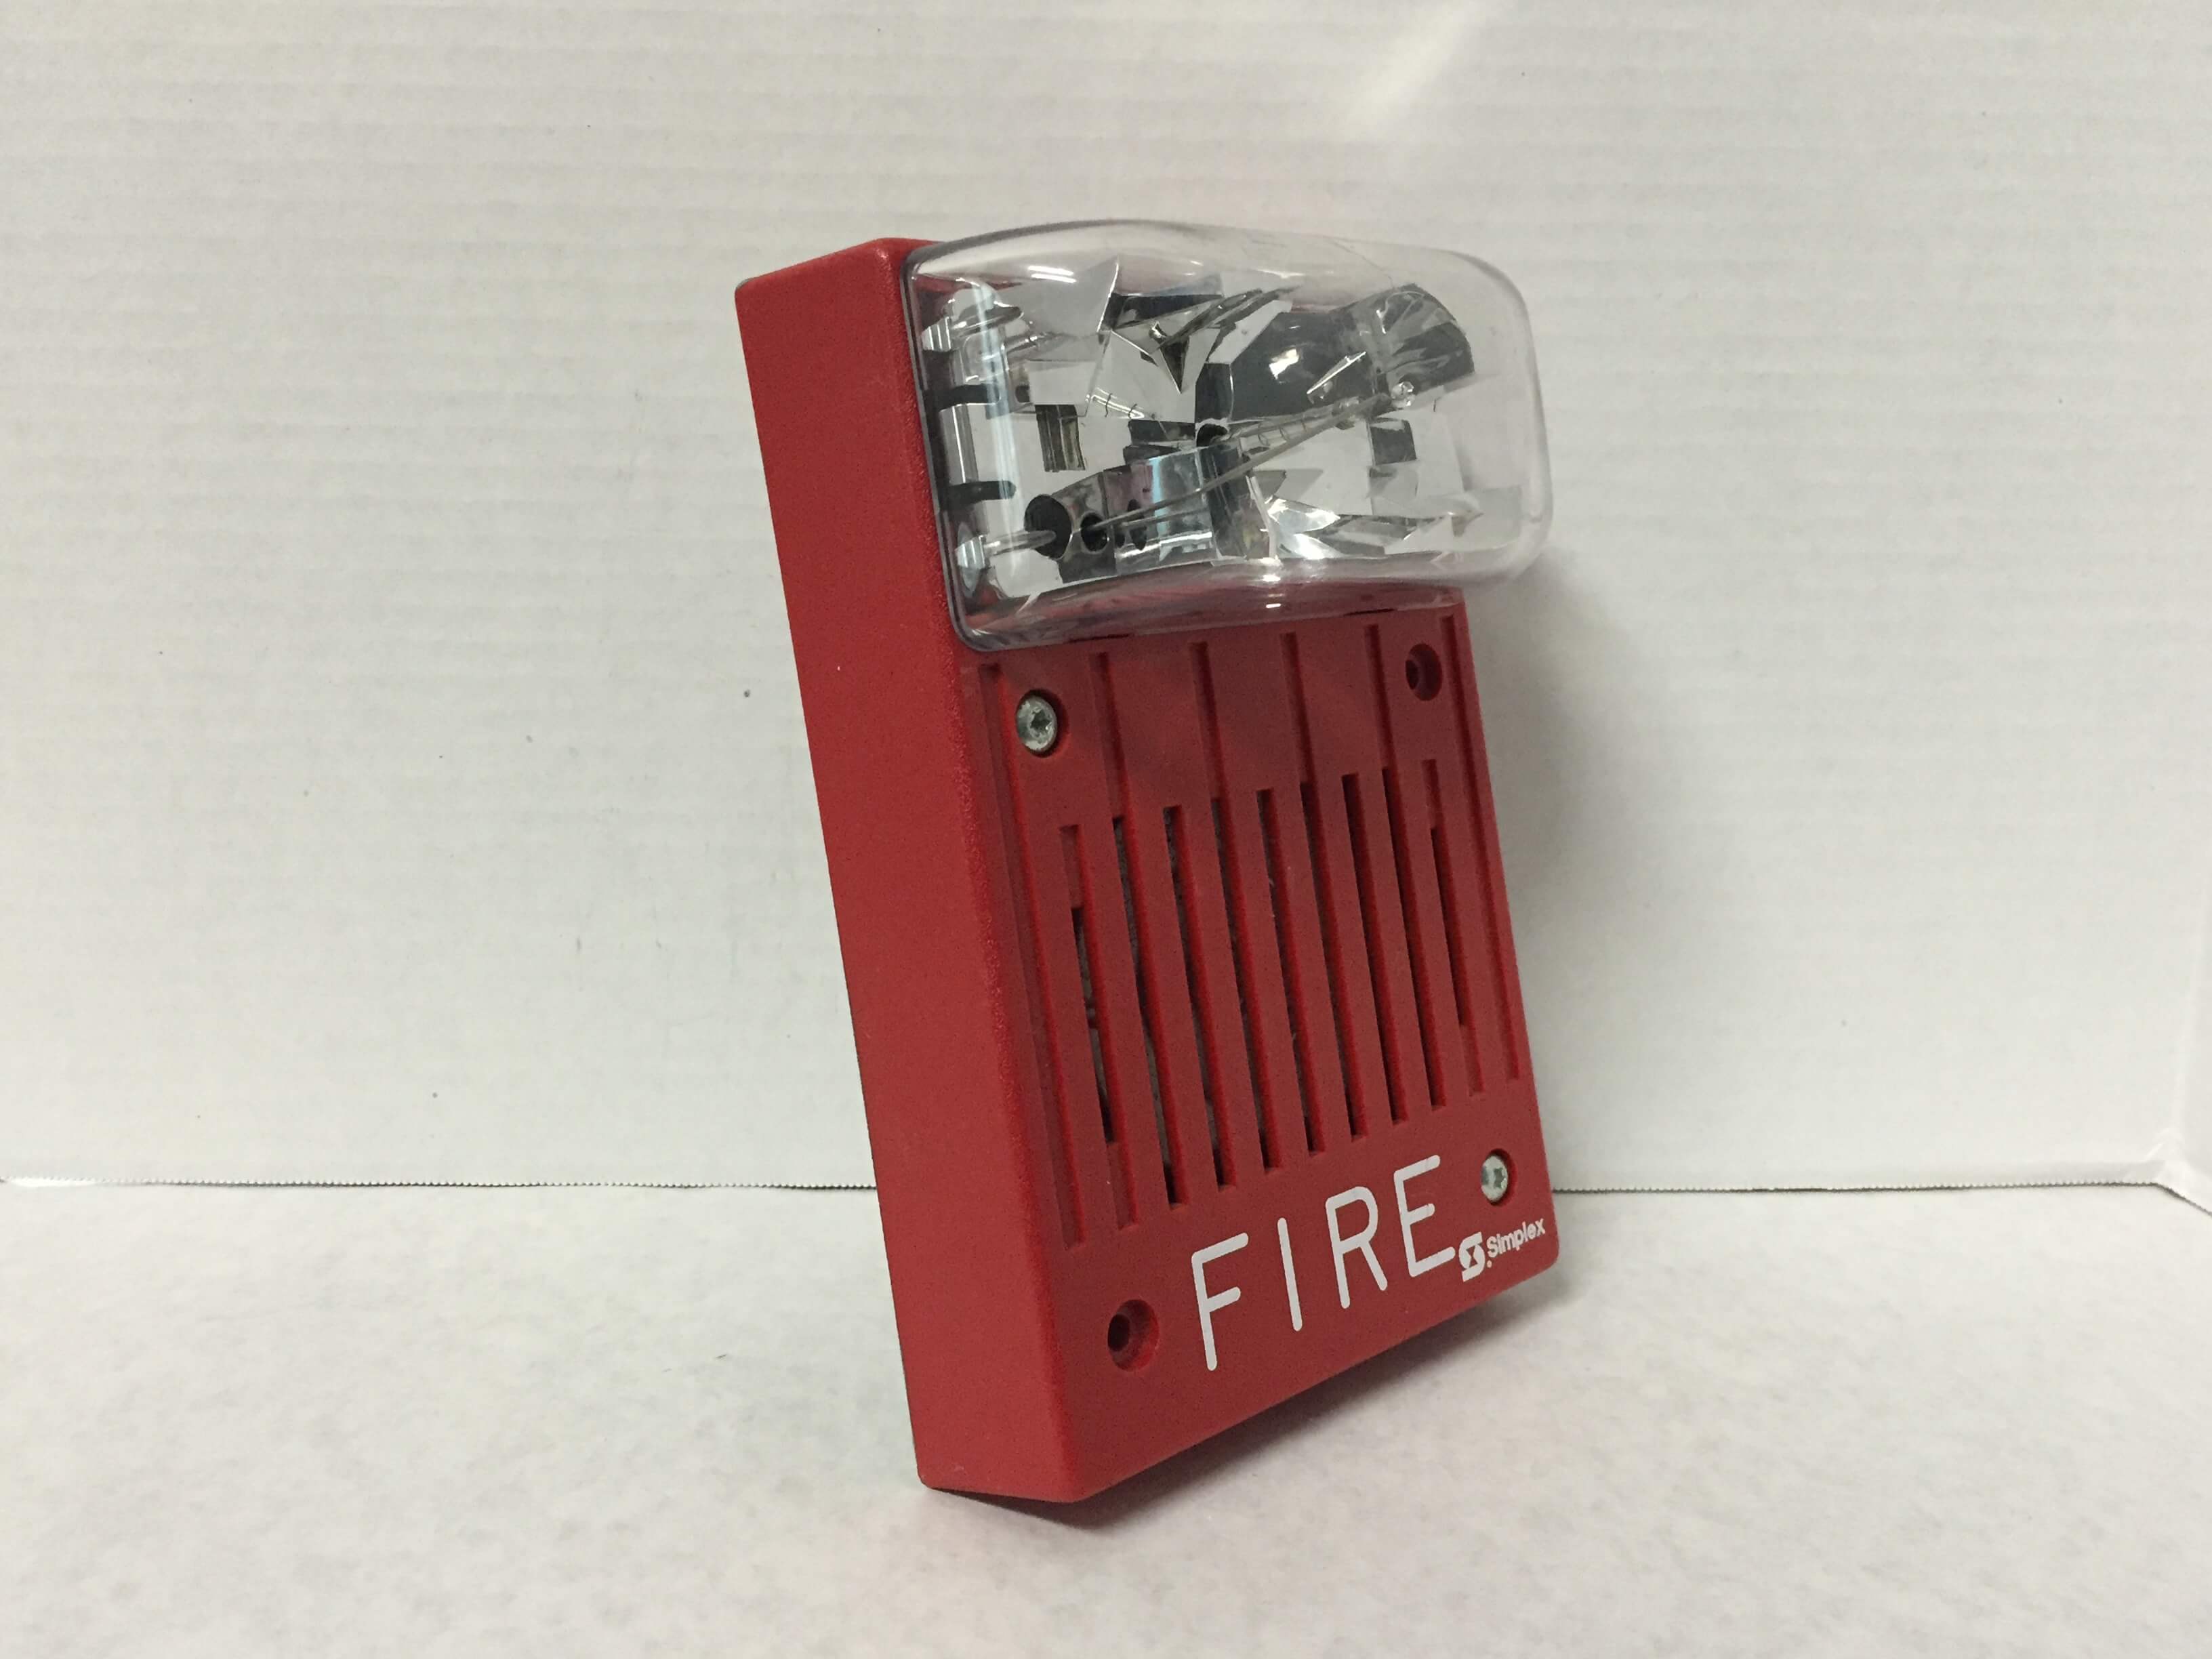 Simplex 4903-9220 - FireAlarms.tv - jjinc24/U8oL0's Fire Alarm ...